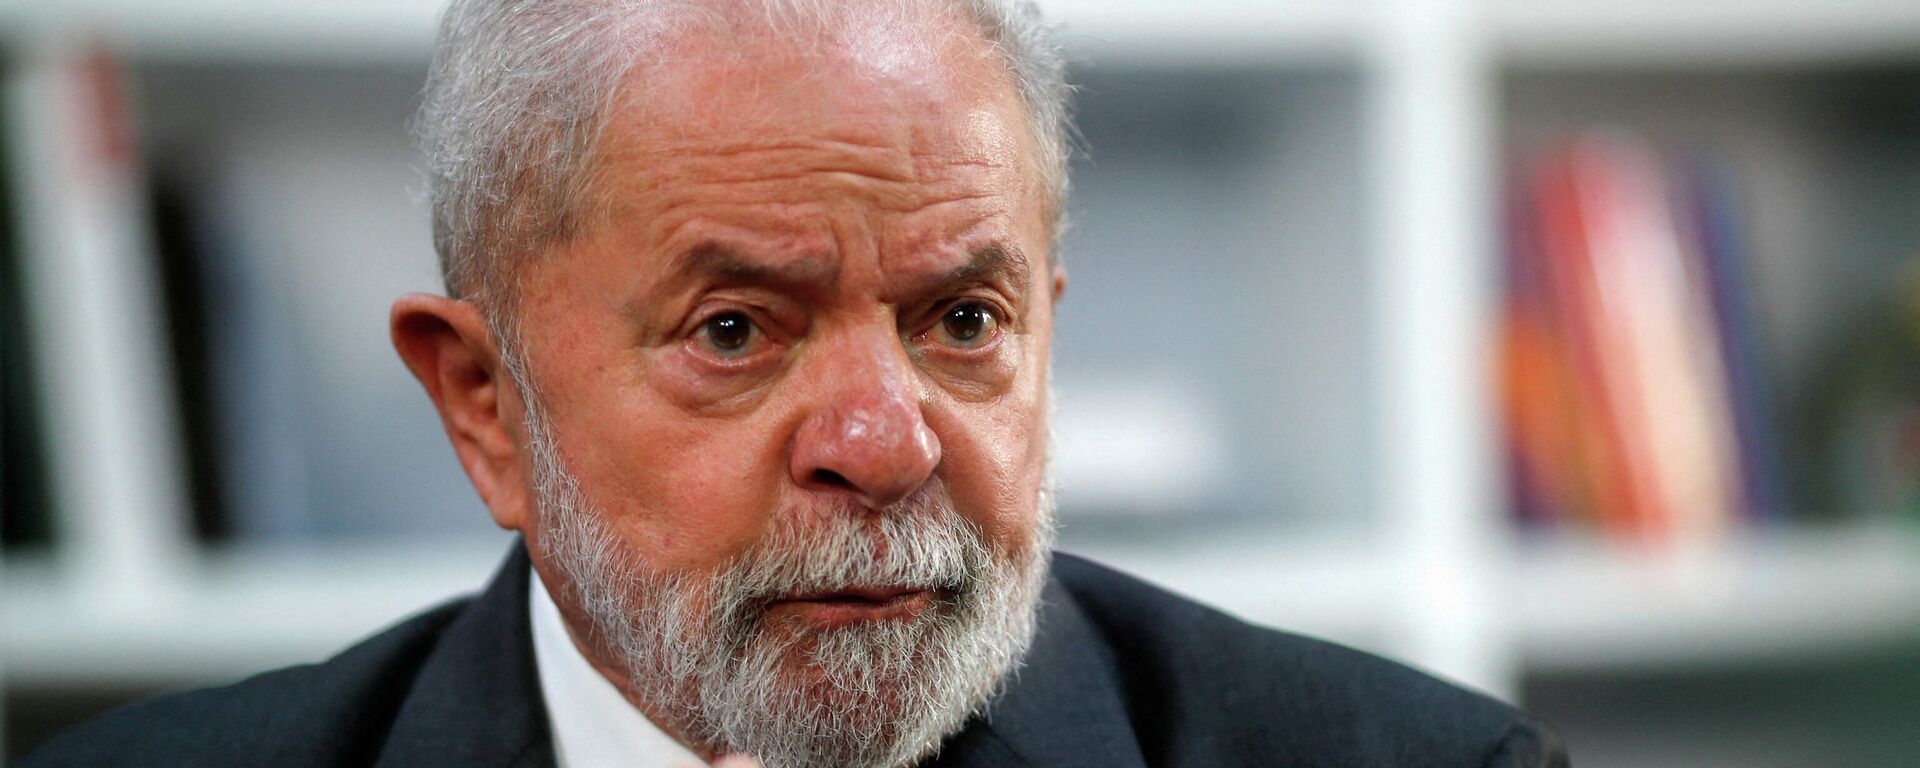 O ex-presidente brasileiro Luiz Inácio Lula da Silva gesticula durante uma entrevista à Reuters em São Paulo, Brasil, em 17 de dezembro de 2021 - Sputnik Brasil, 1920, 19.01.2022